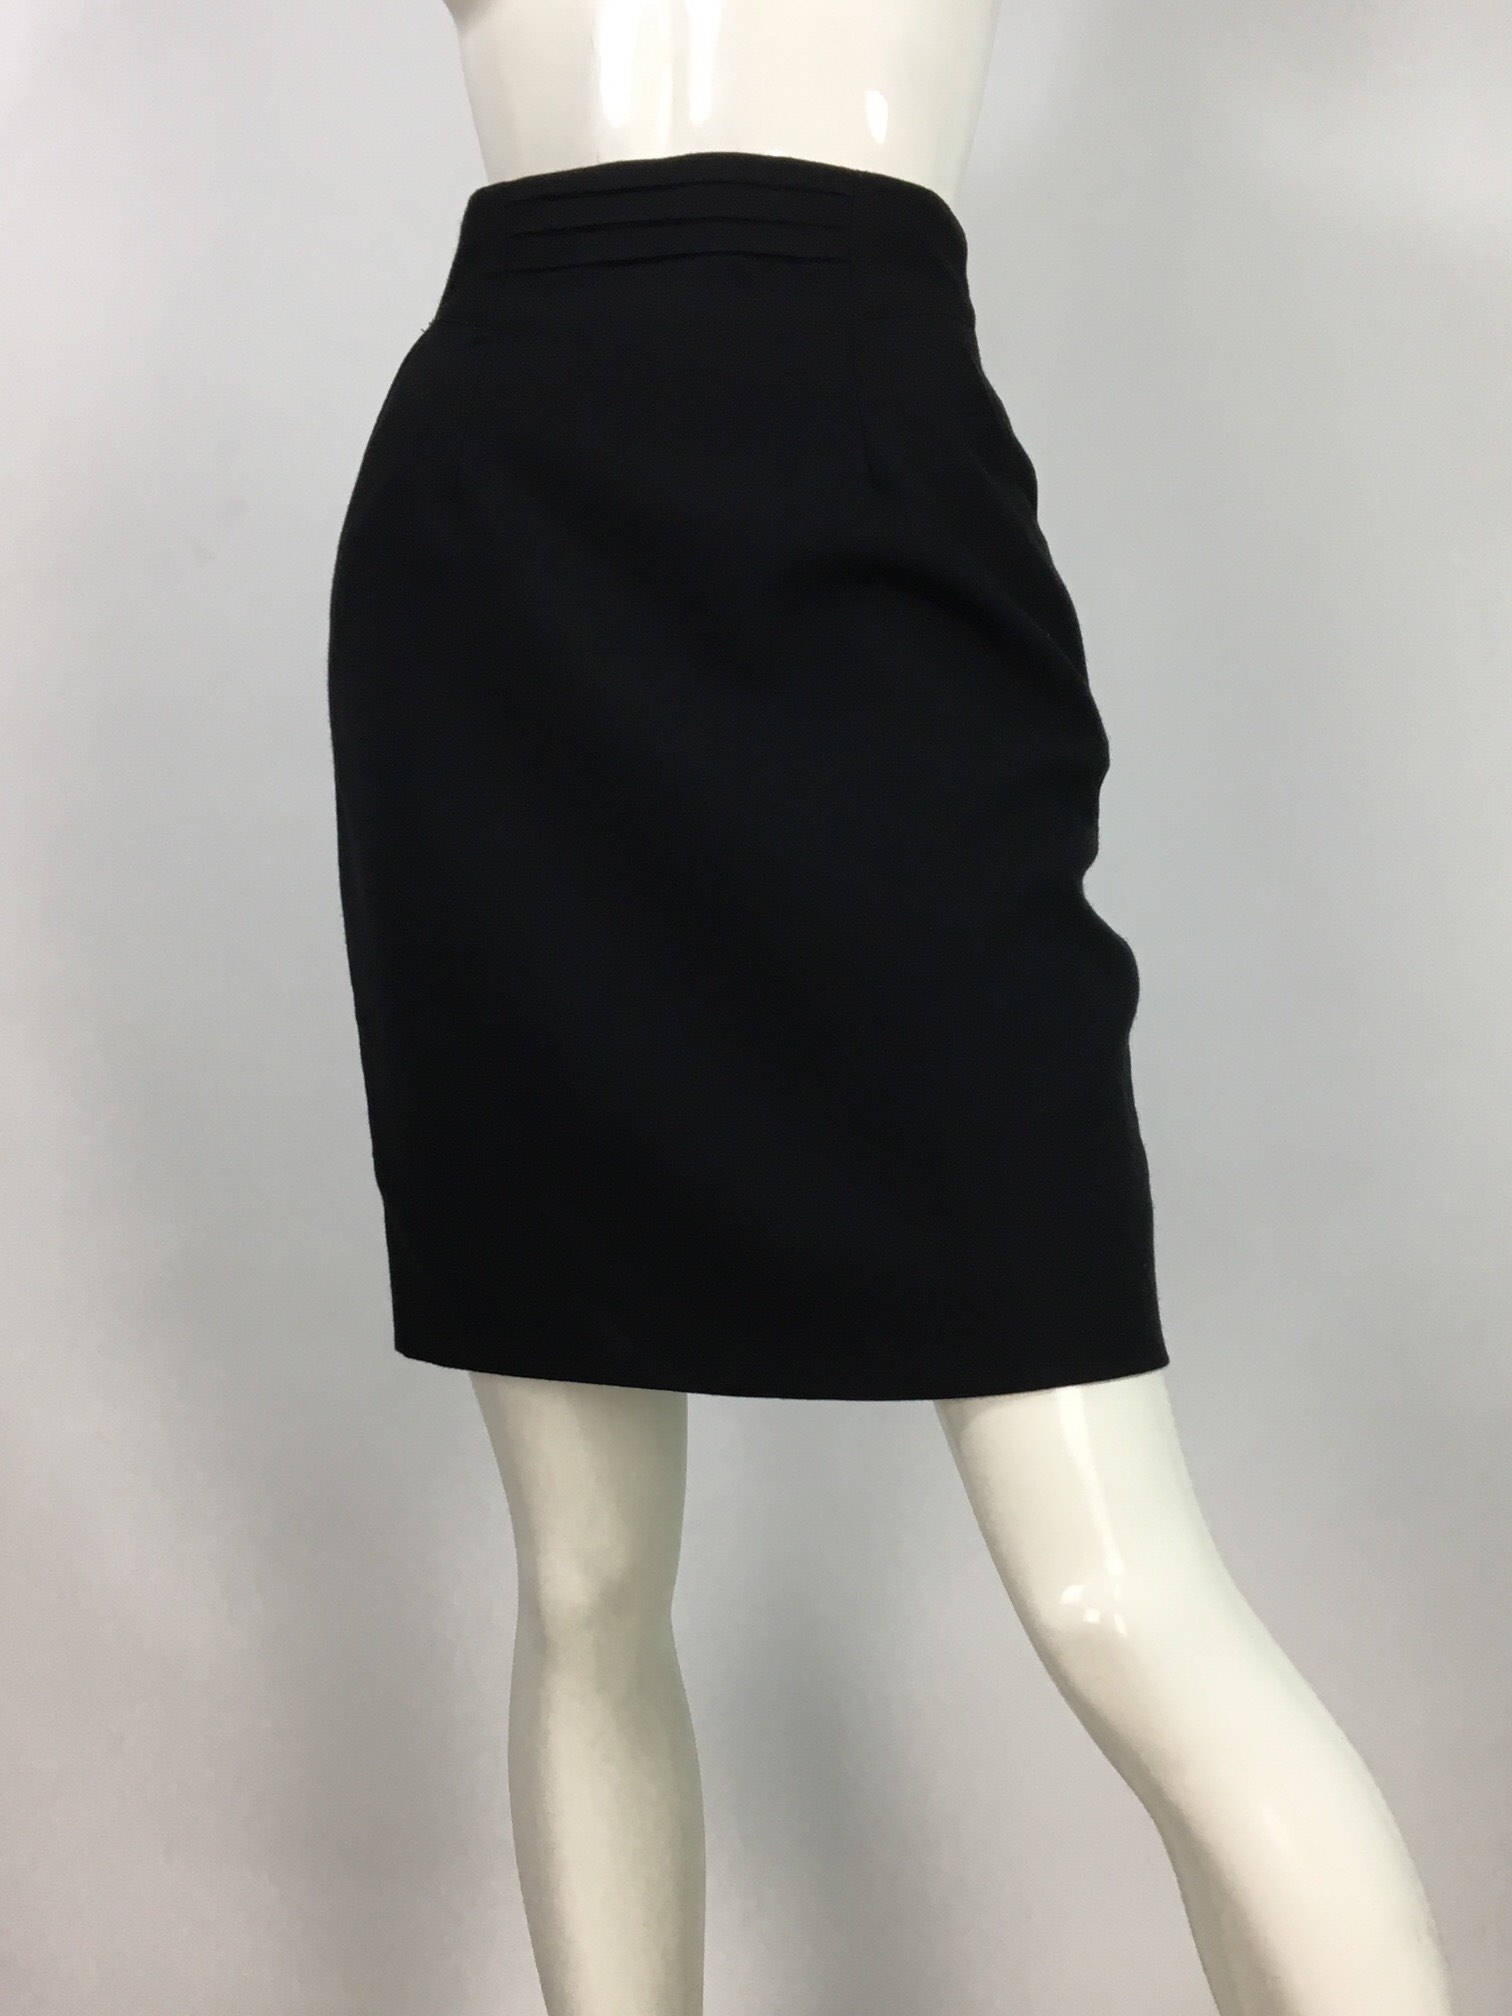 80s Black High Waist Skirt/1980s Looks Wool Skirt - Etsy